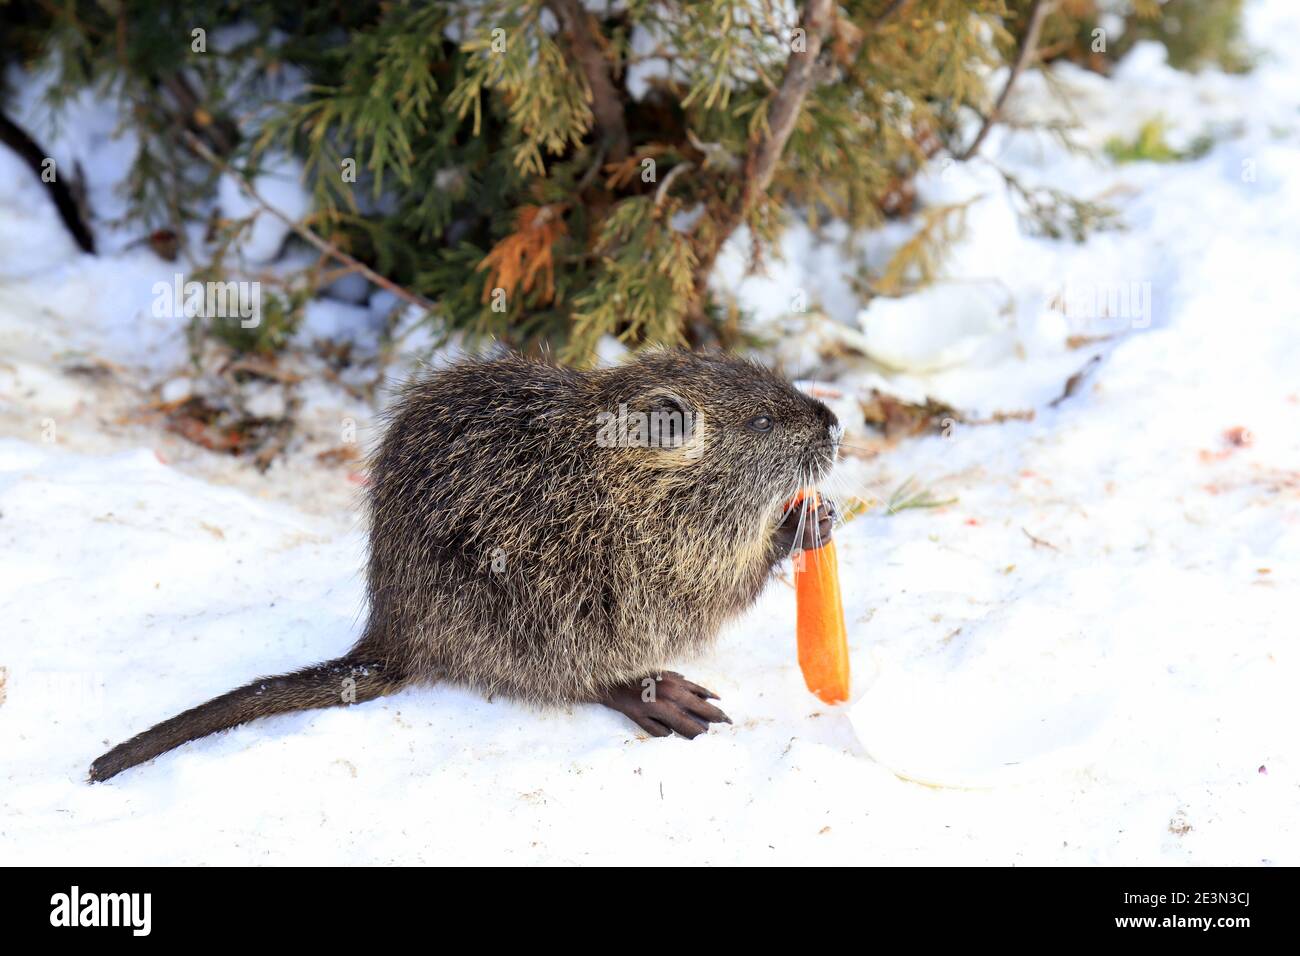 Nutria con lunga pelliccia grigia, lontra, castoro paludoso mangiare nella neve in fattoria il fiume. Water Rat, muskrat si trova in un parco invernale, zoo, foresta. Foto Stock